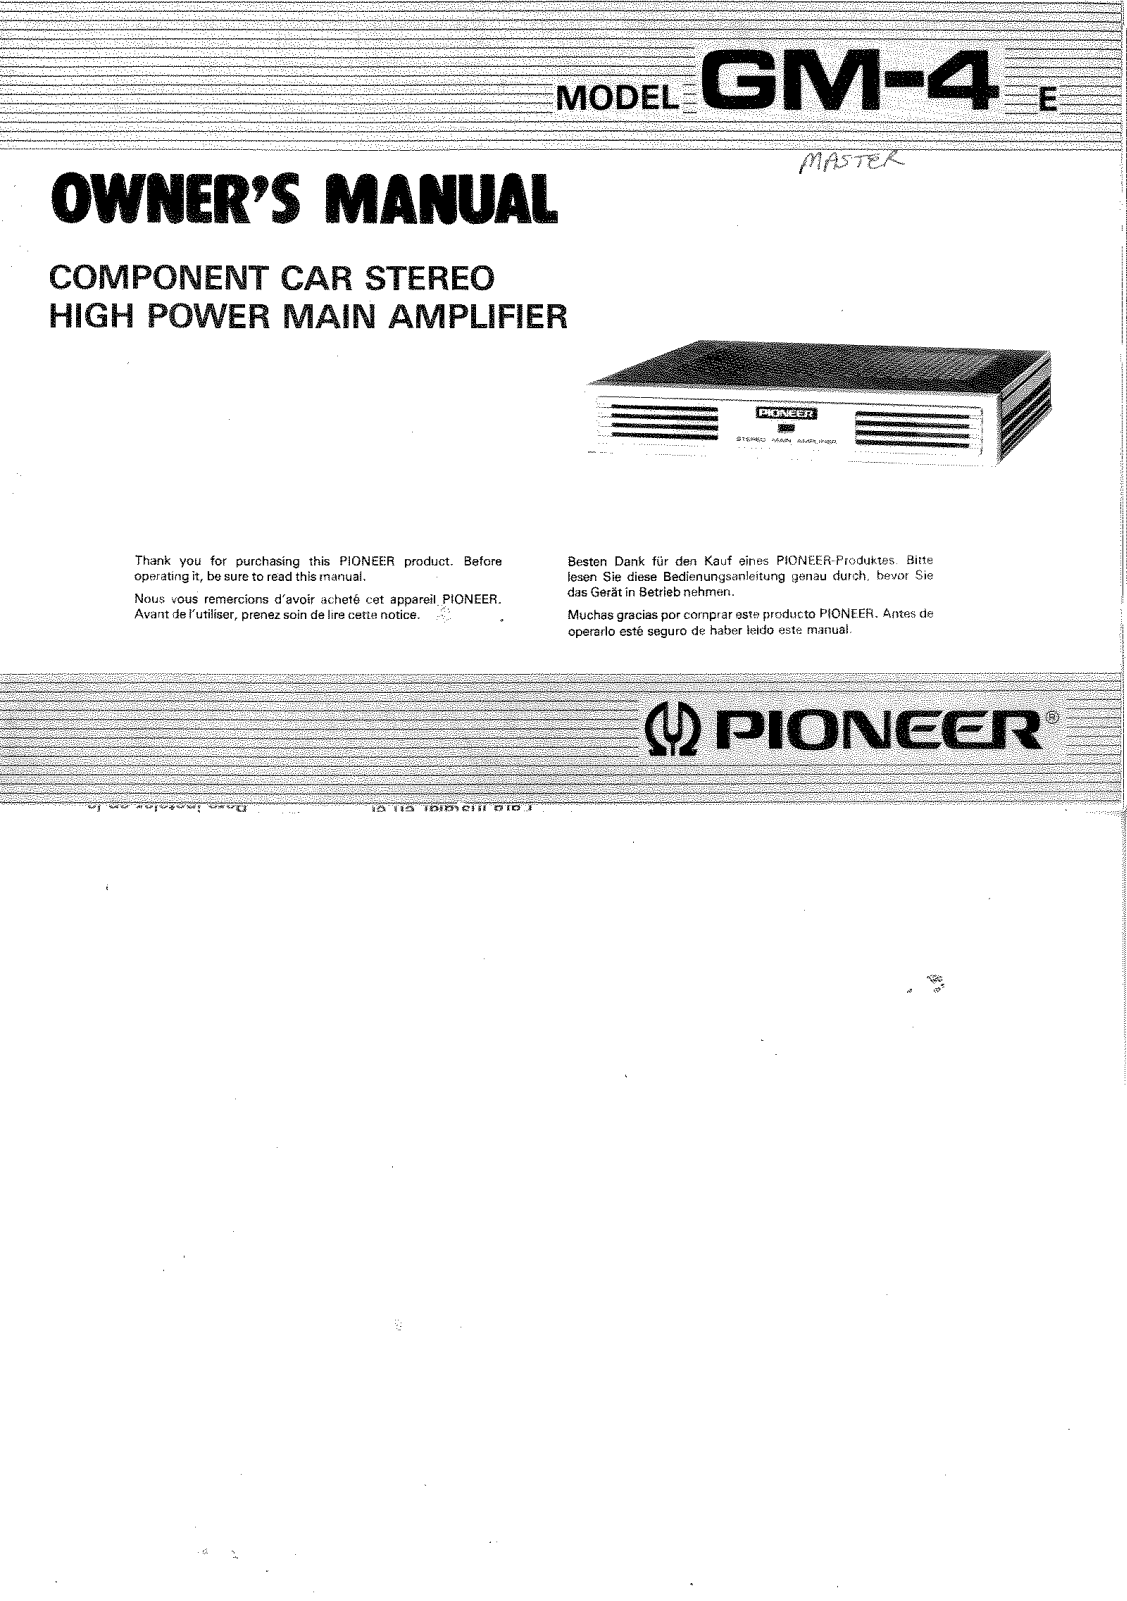 Pioneer GM-4 Owner's Manual